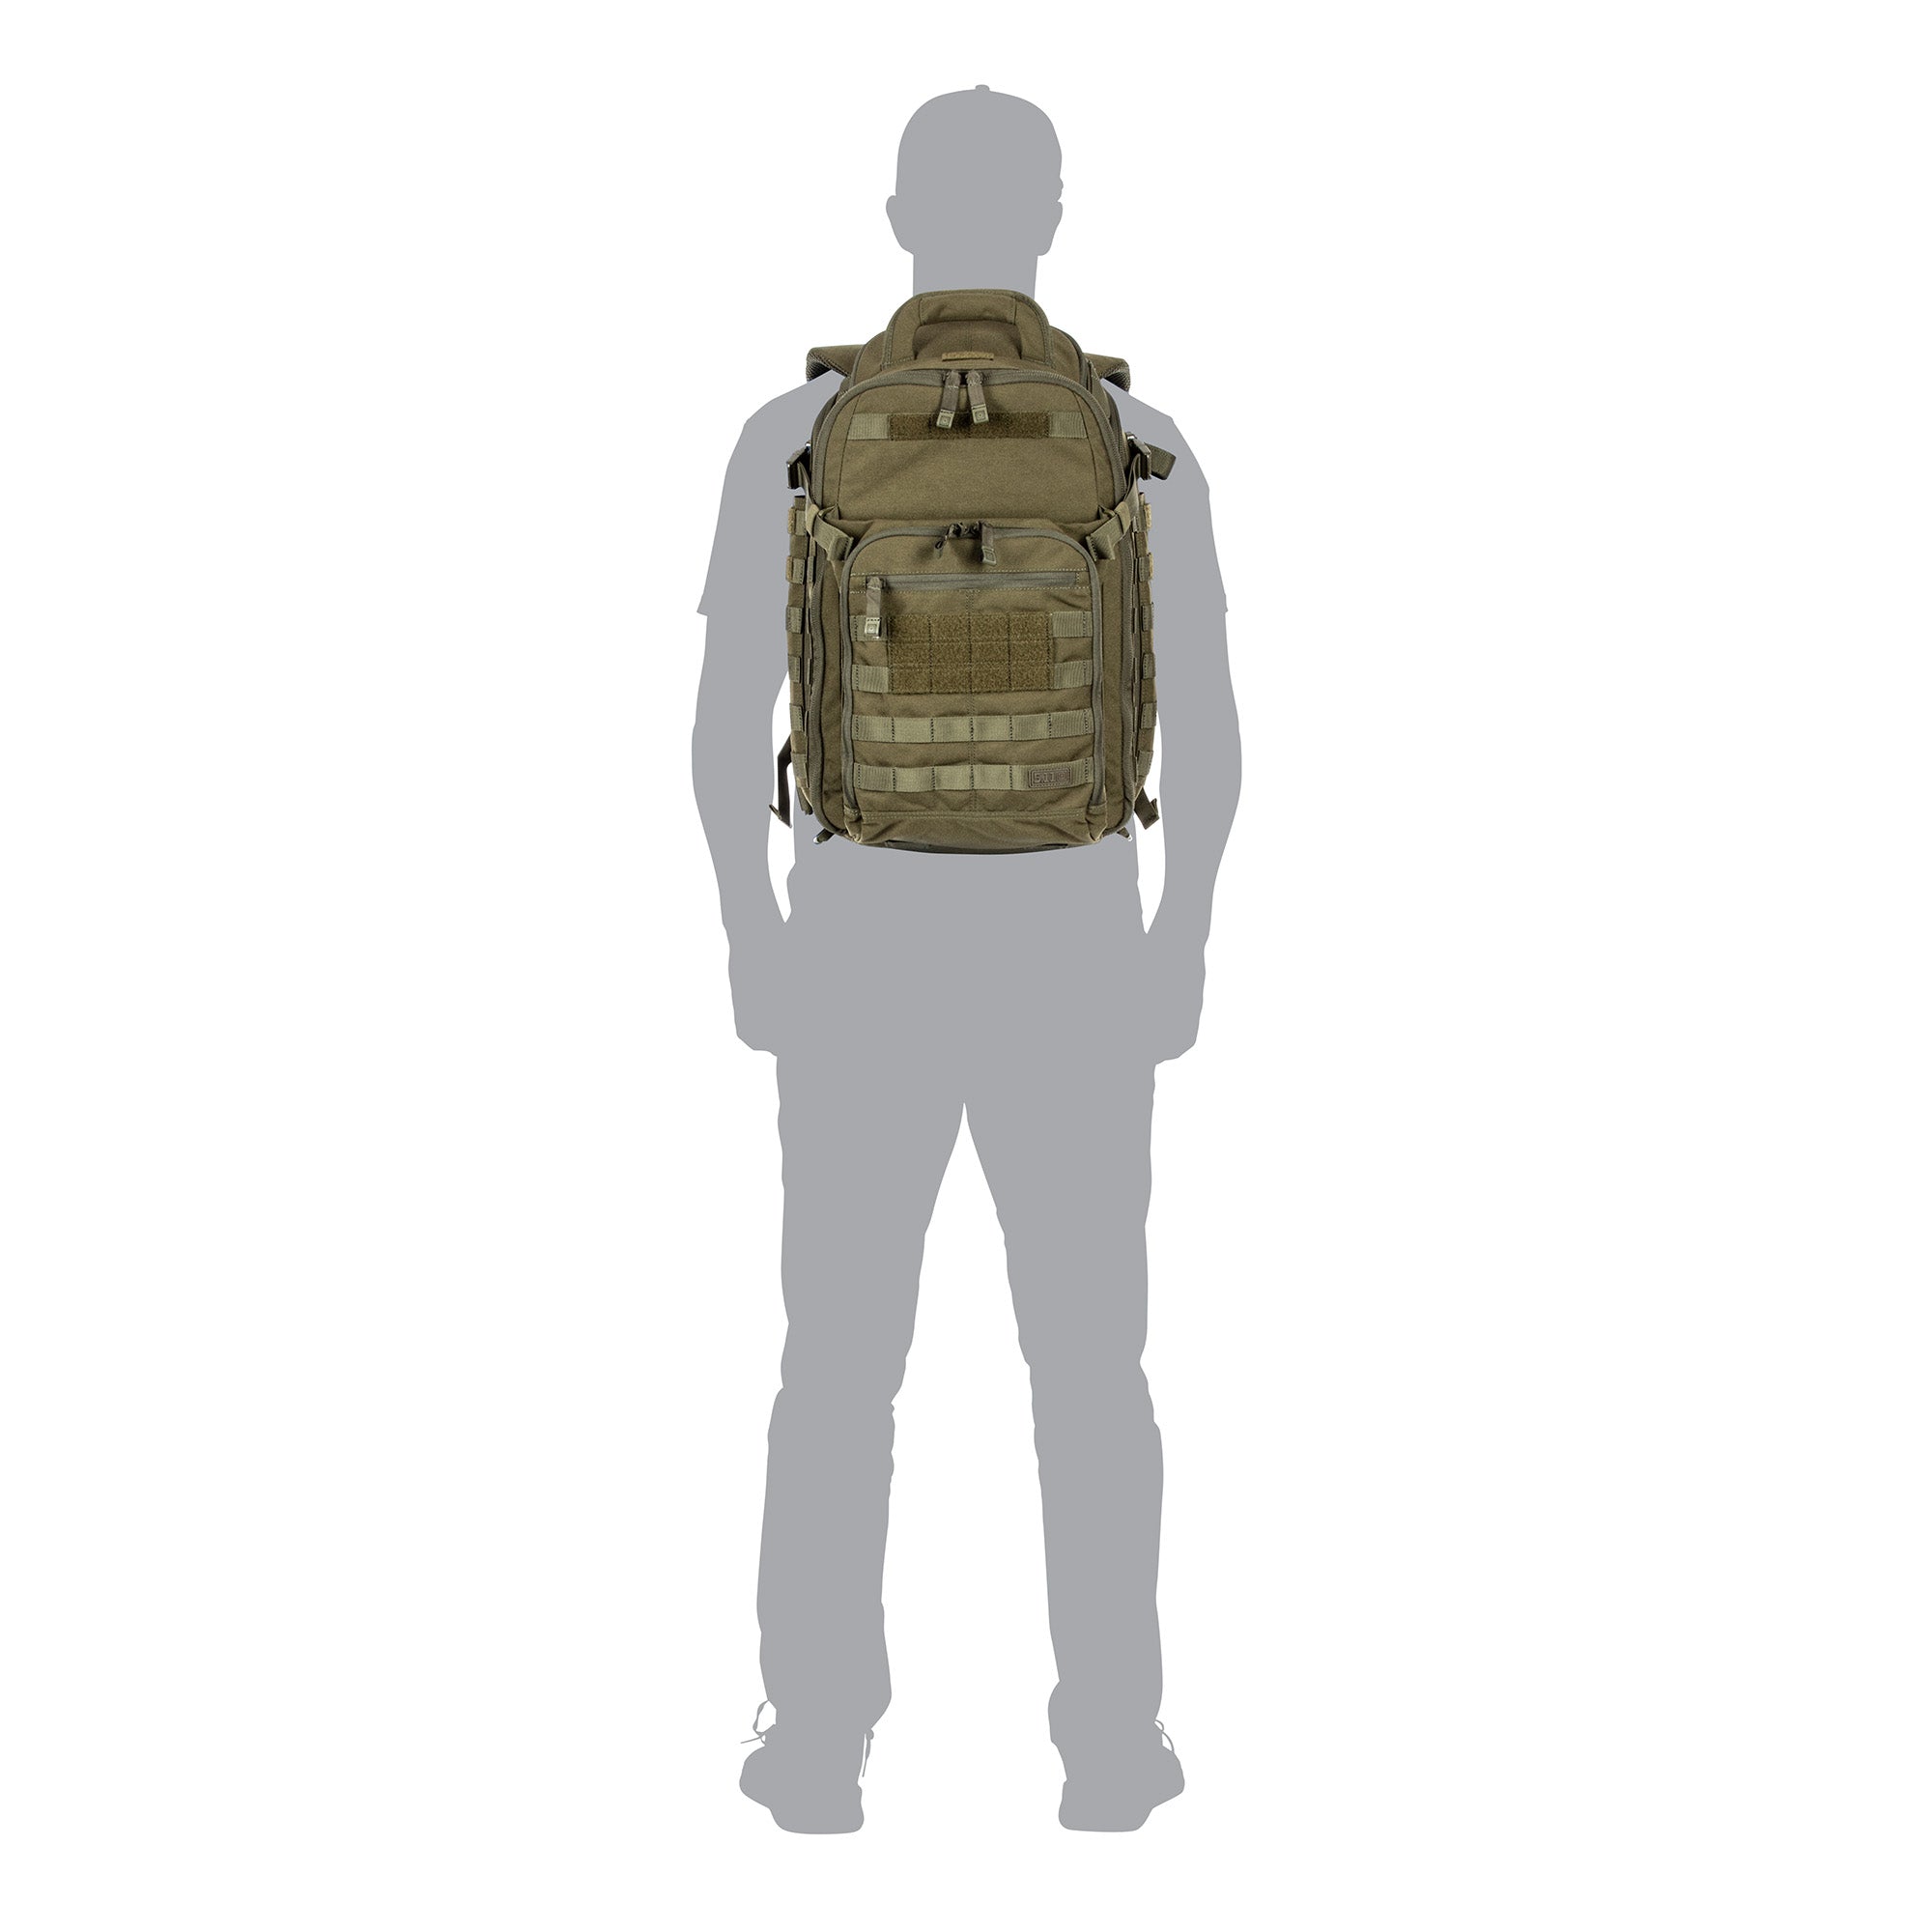 All Hazards Prime Backpack 29L – 5.11 Tactical Japan